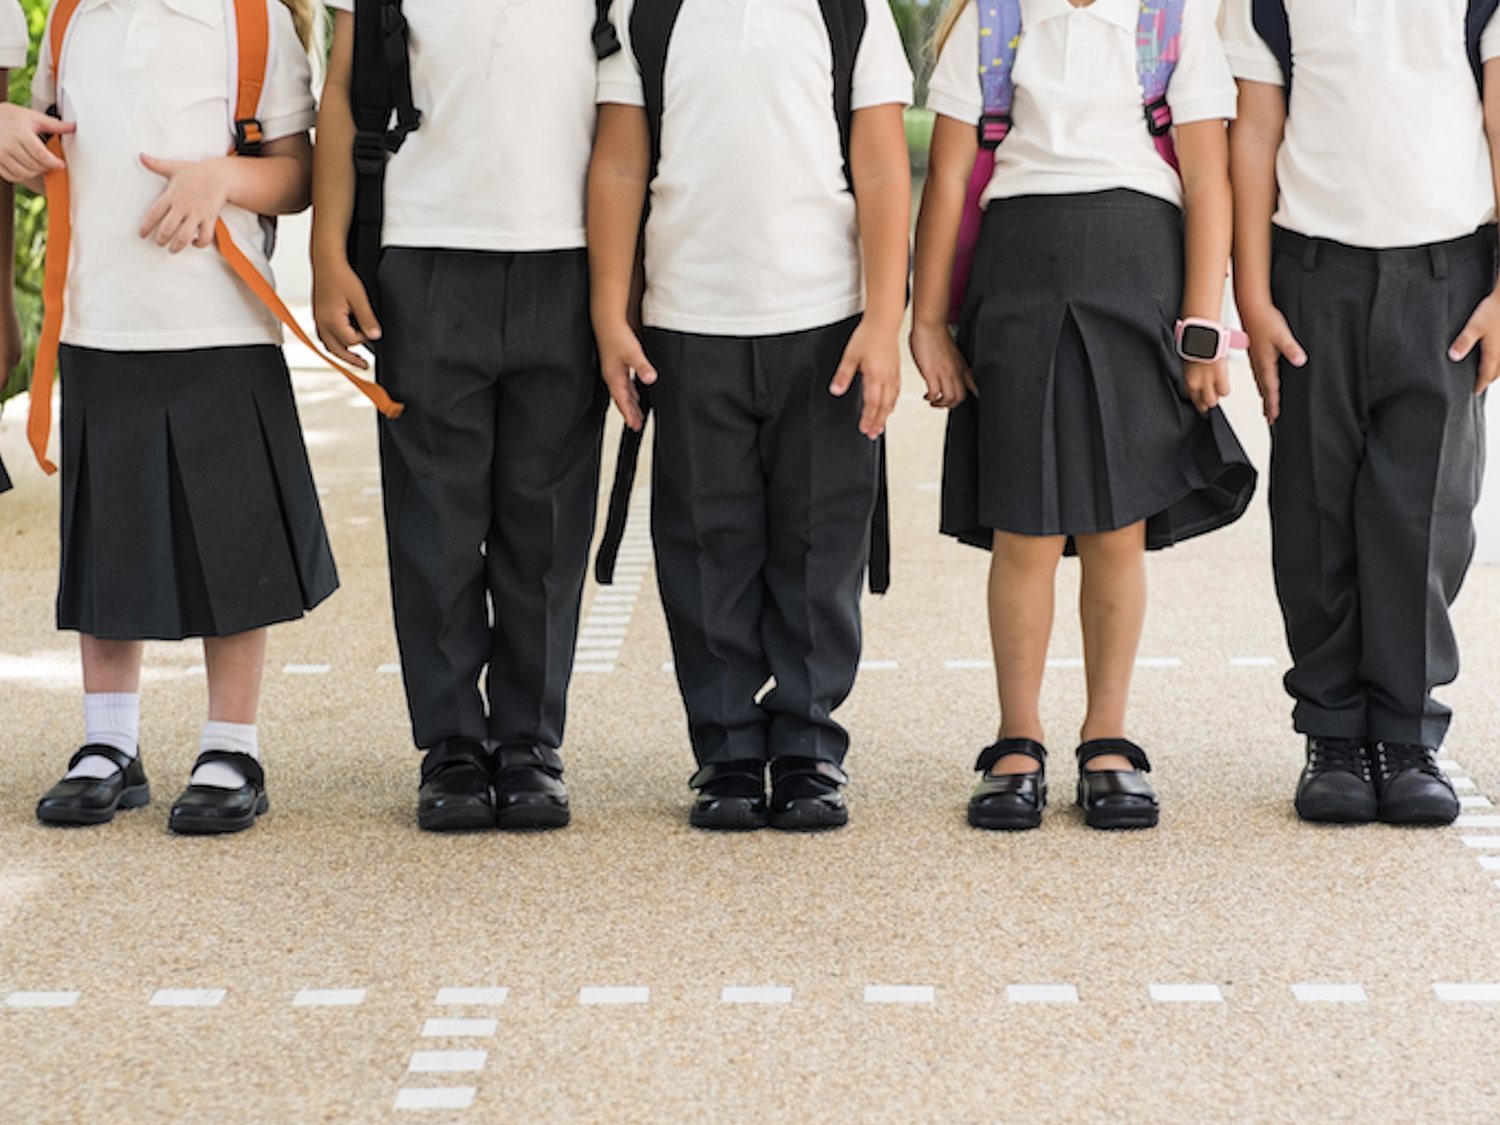 Valencia prohibirá que los uniformes escolares sean diferentes según el sexo